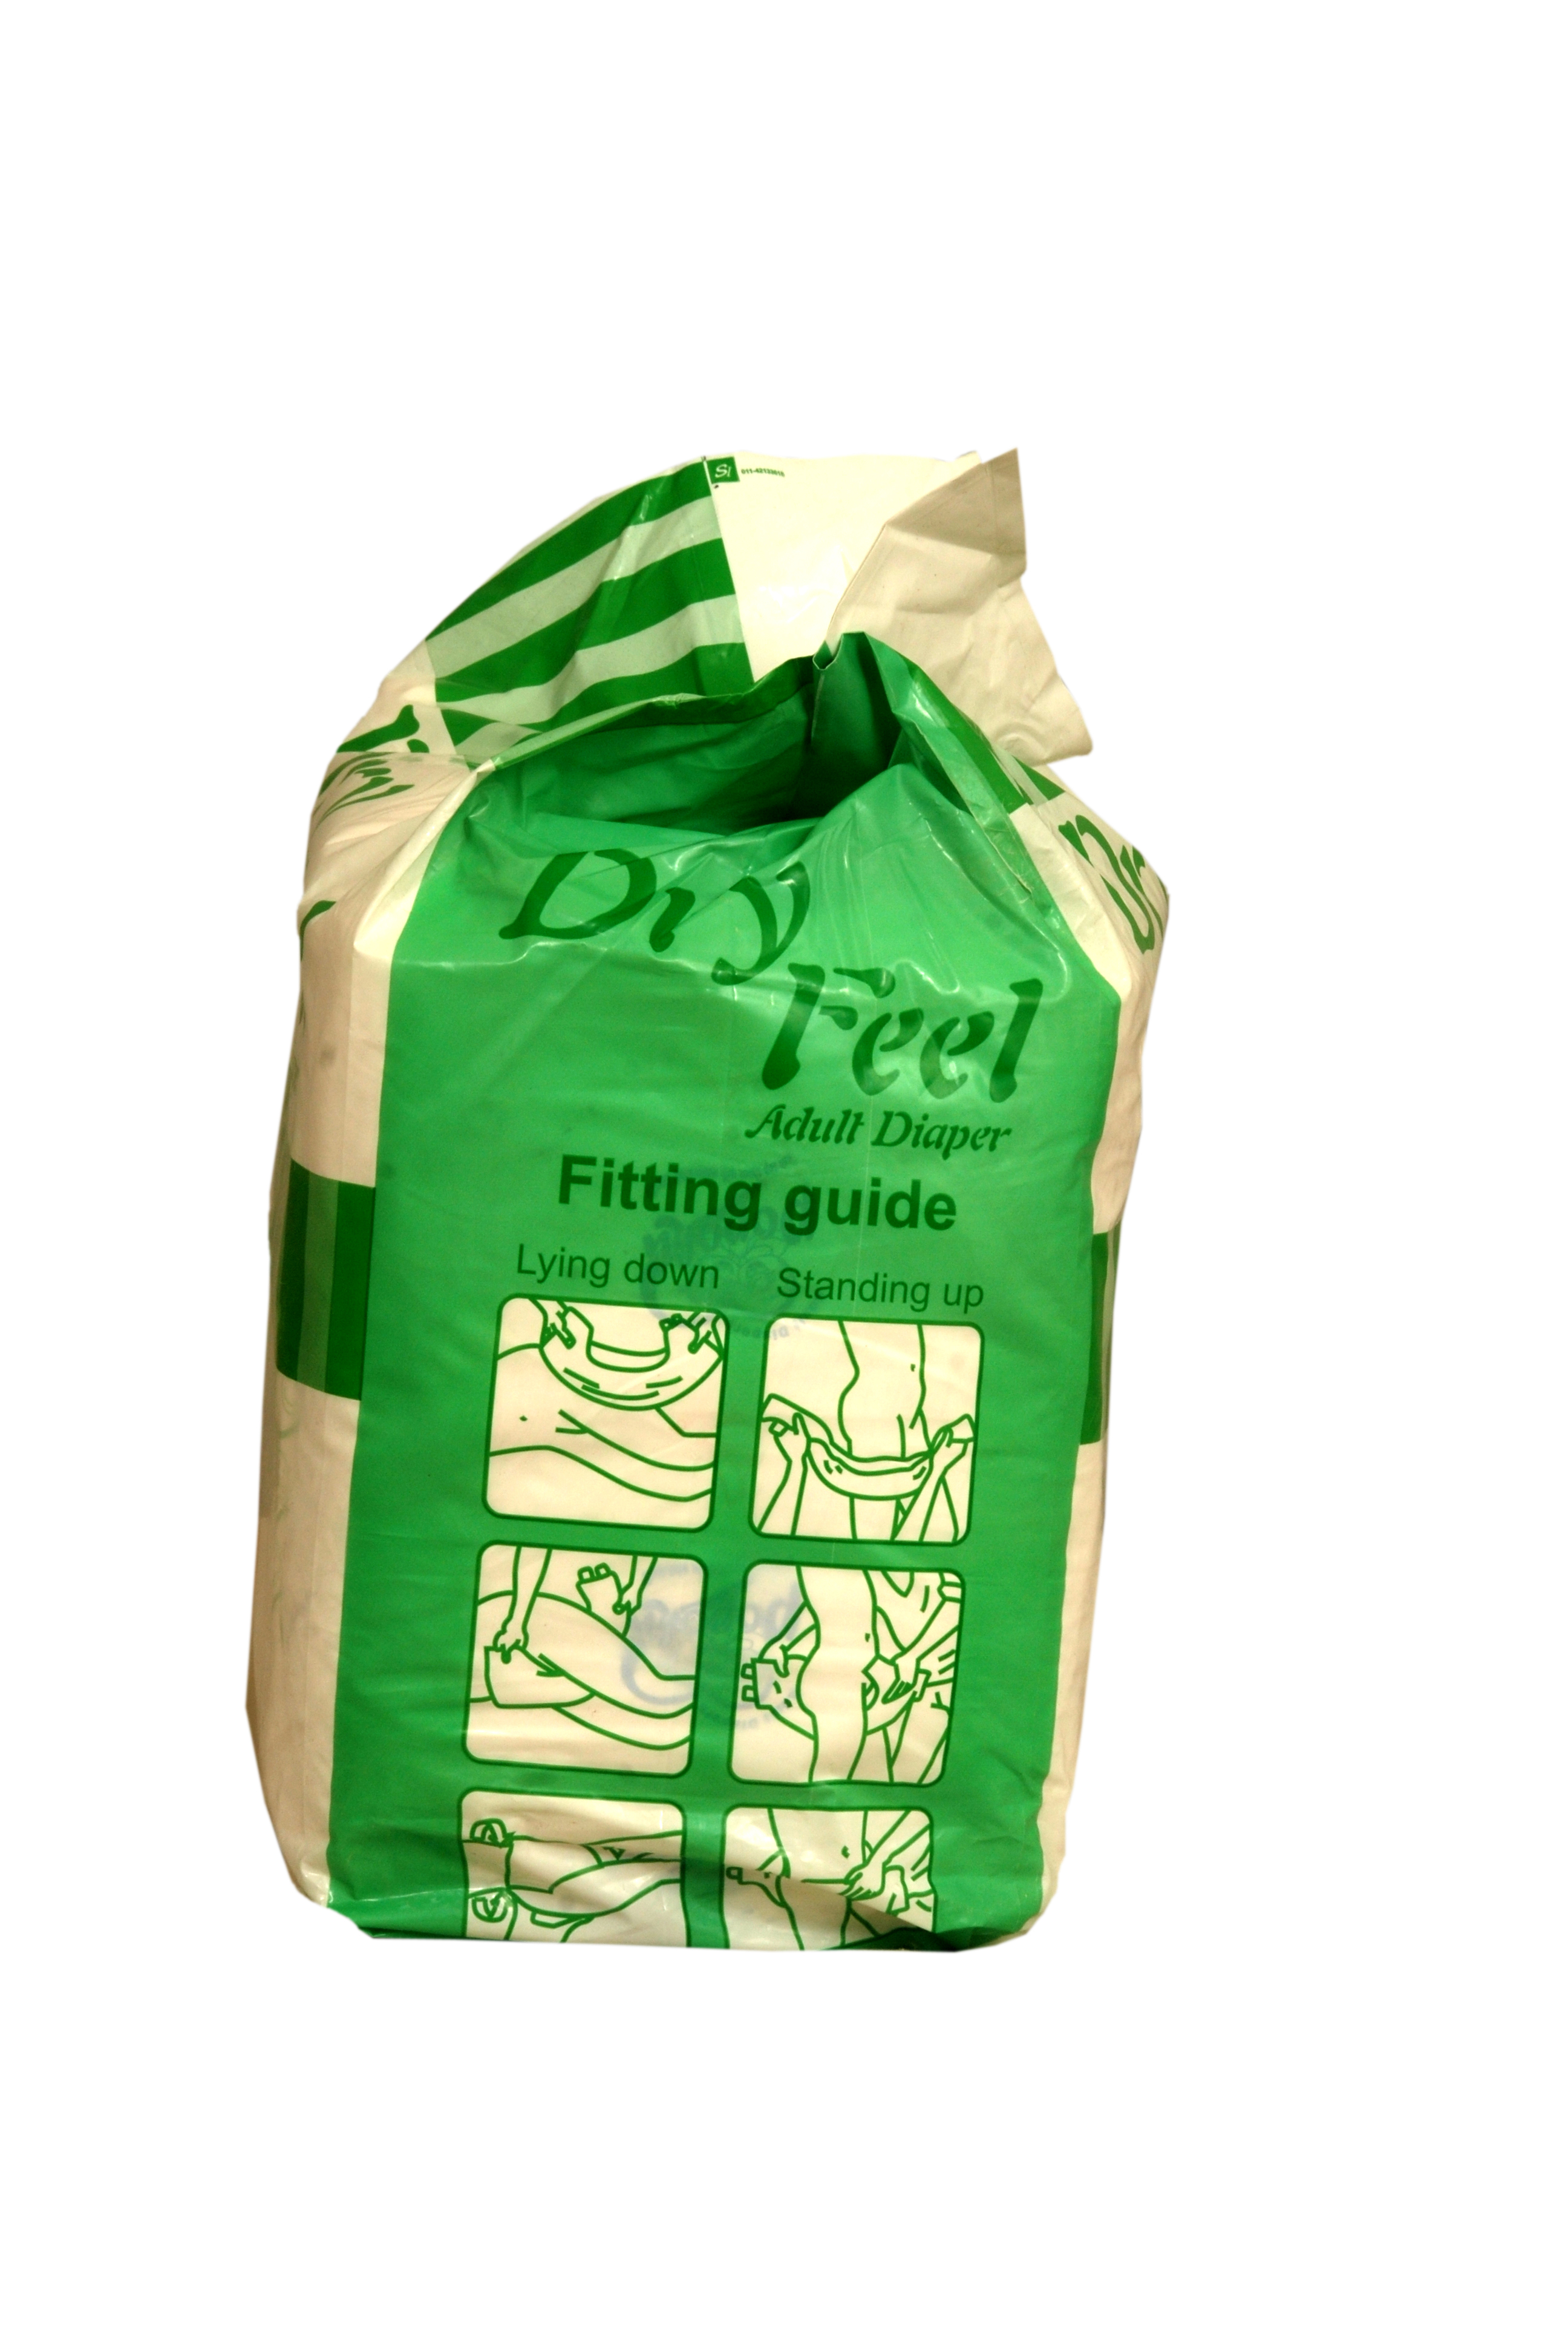 Dryfeel Adult Diaper